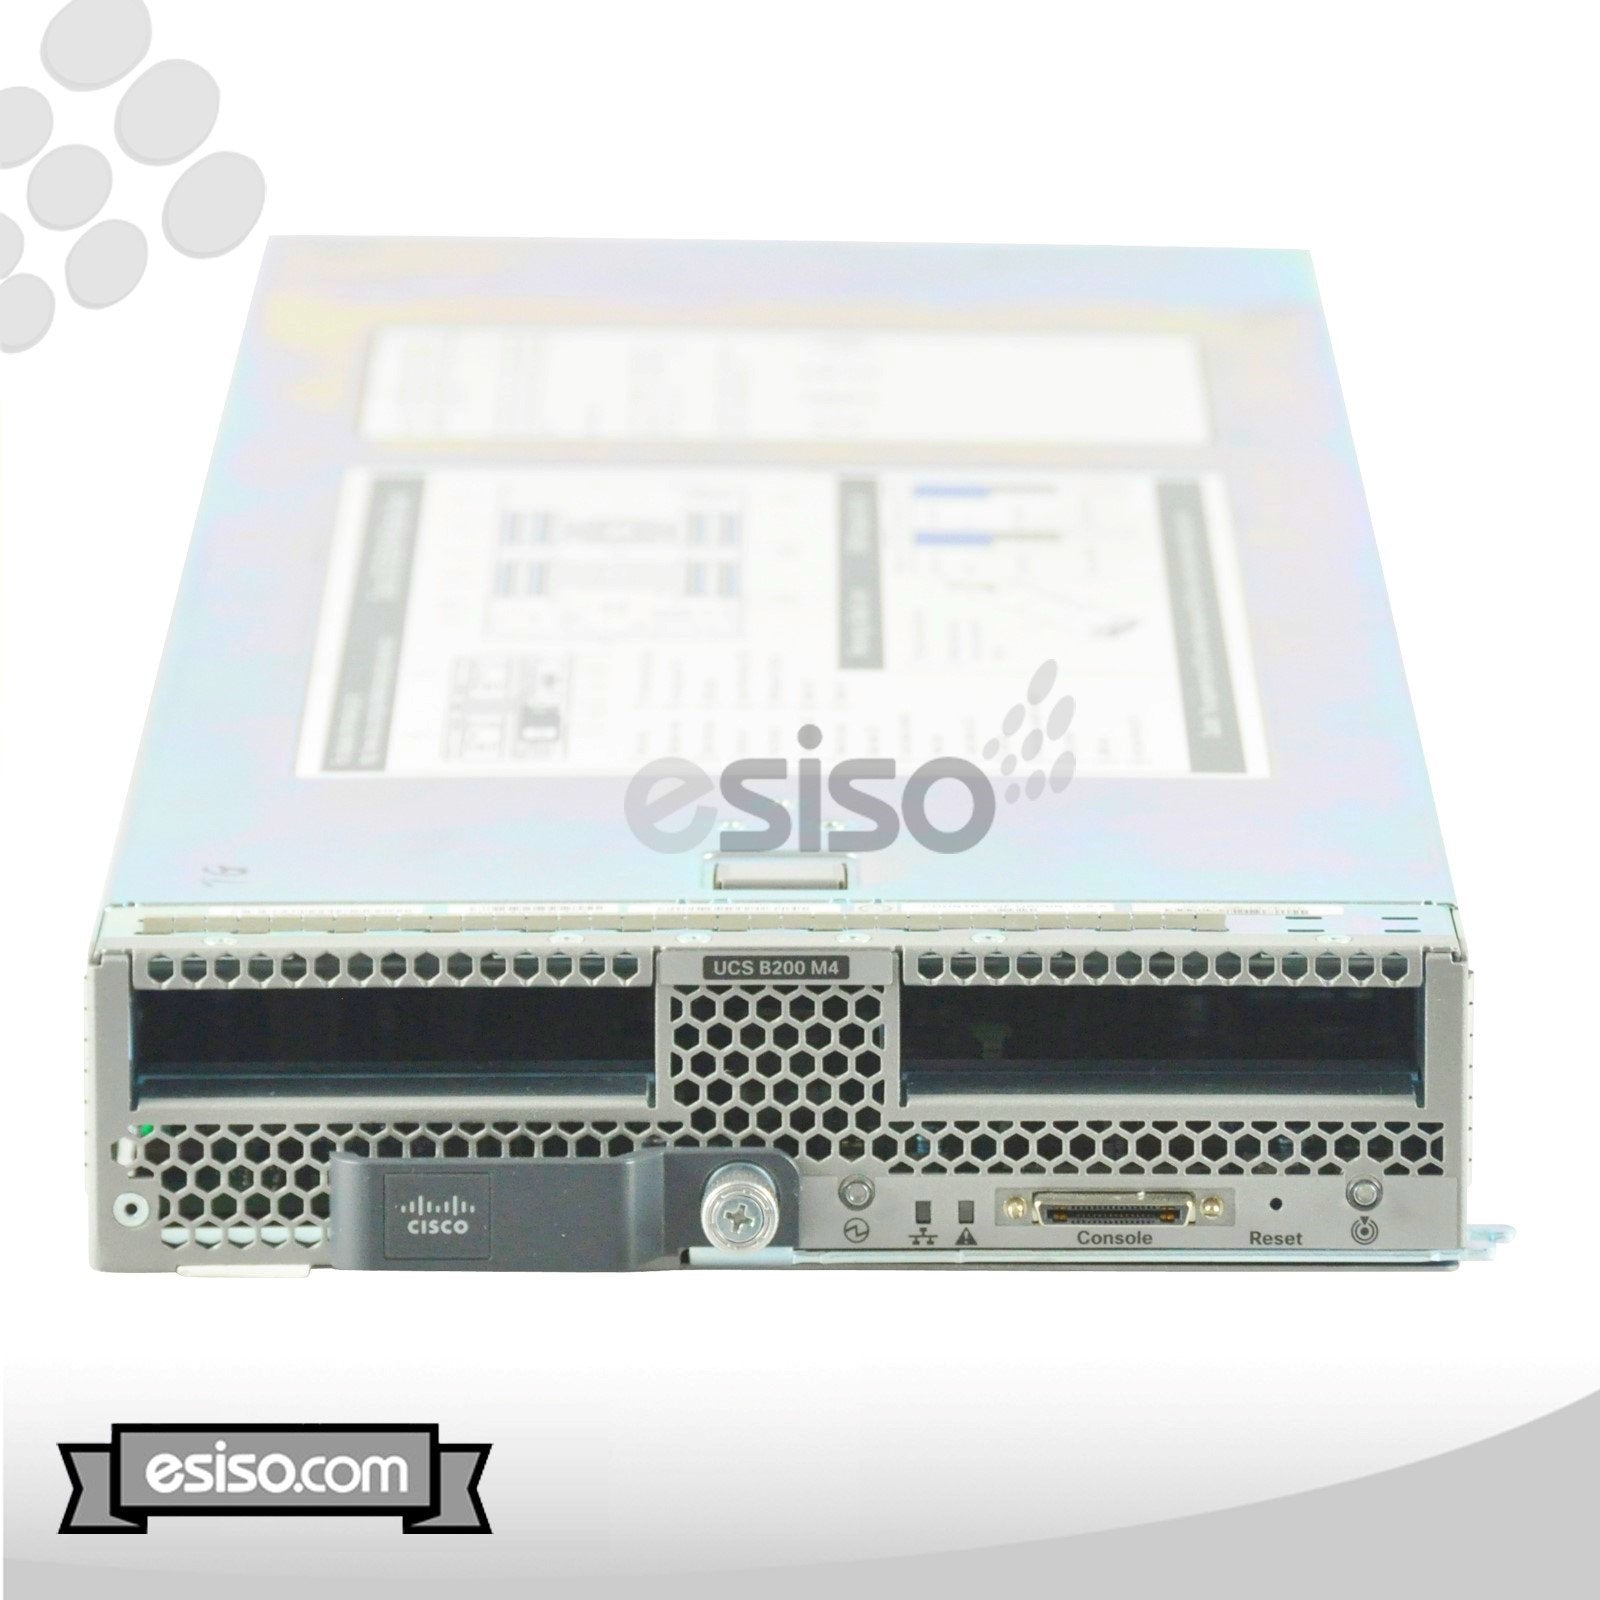 CISCO UCS B200 M4 BLADE 2x 12 CORE E5-2680v3 2.5GHz 32GB RAM 2x 800GB SSD